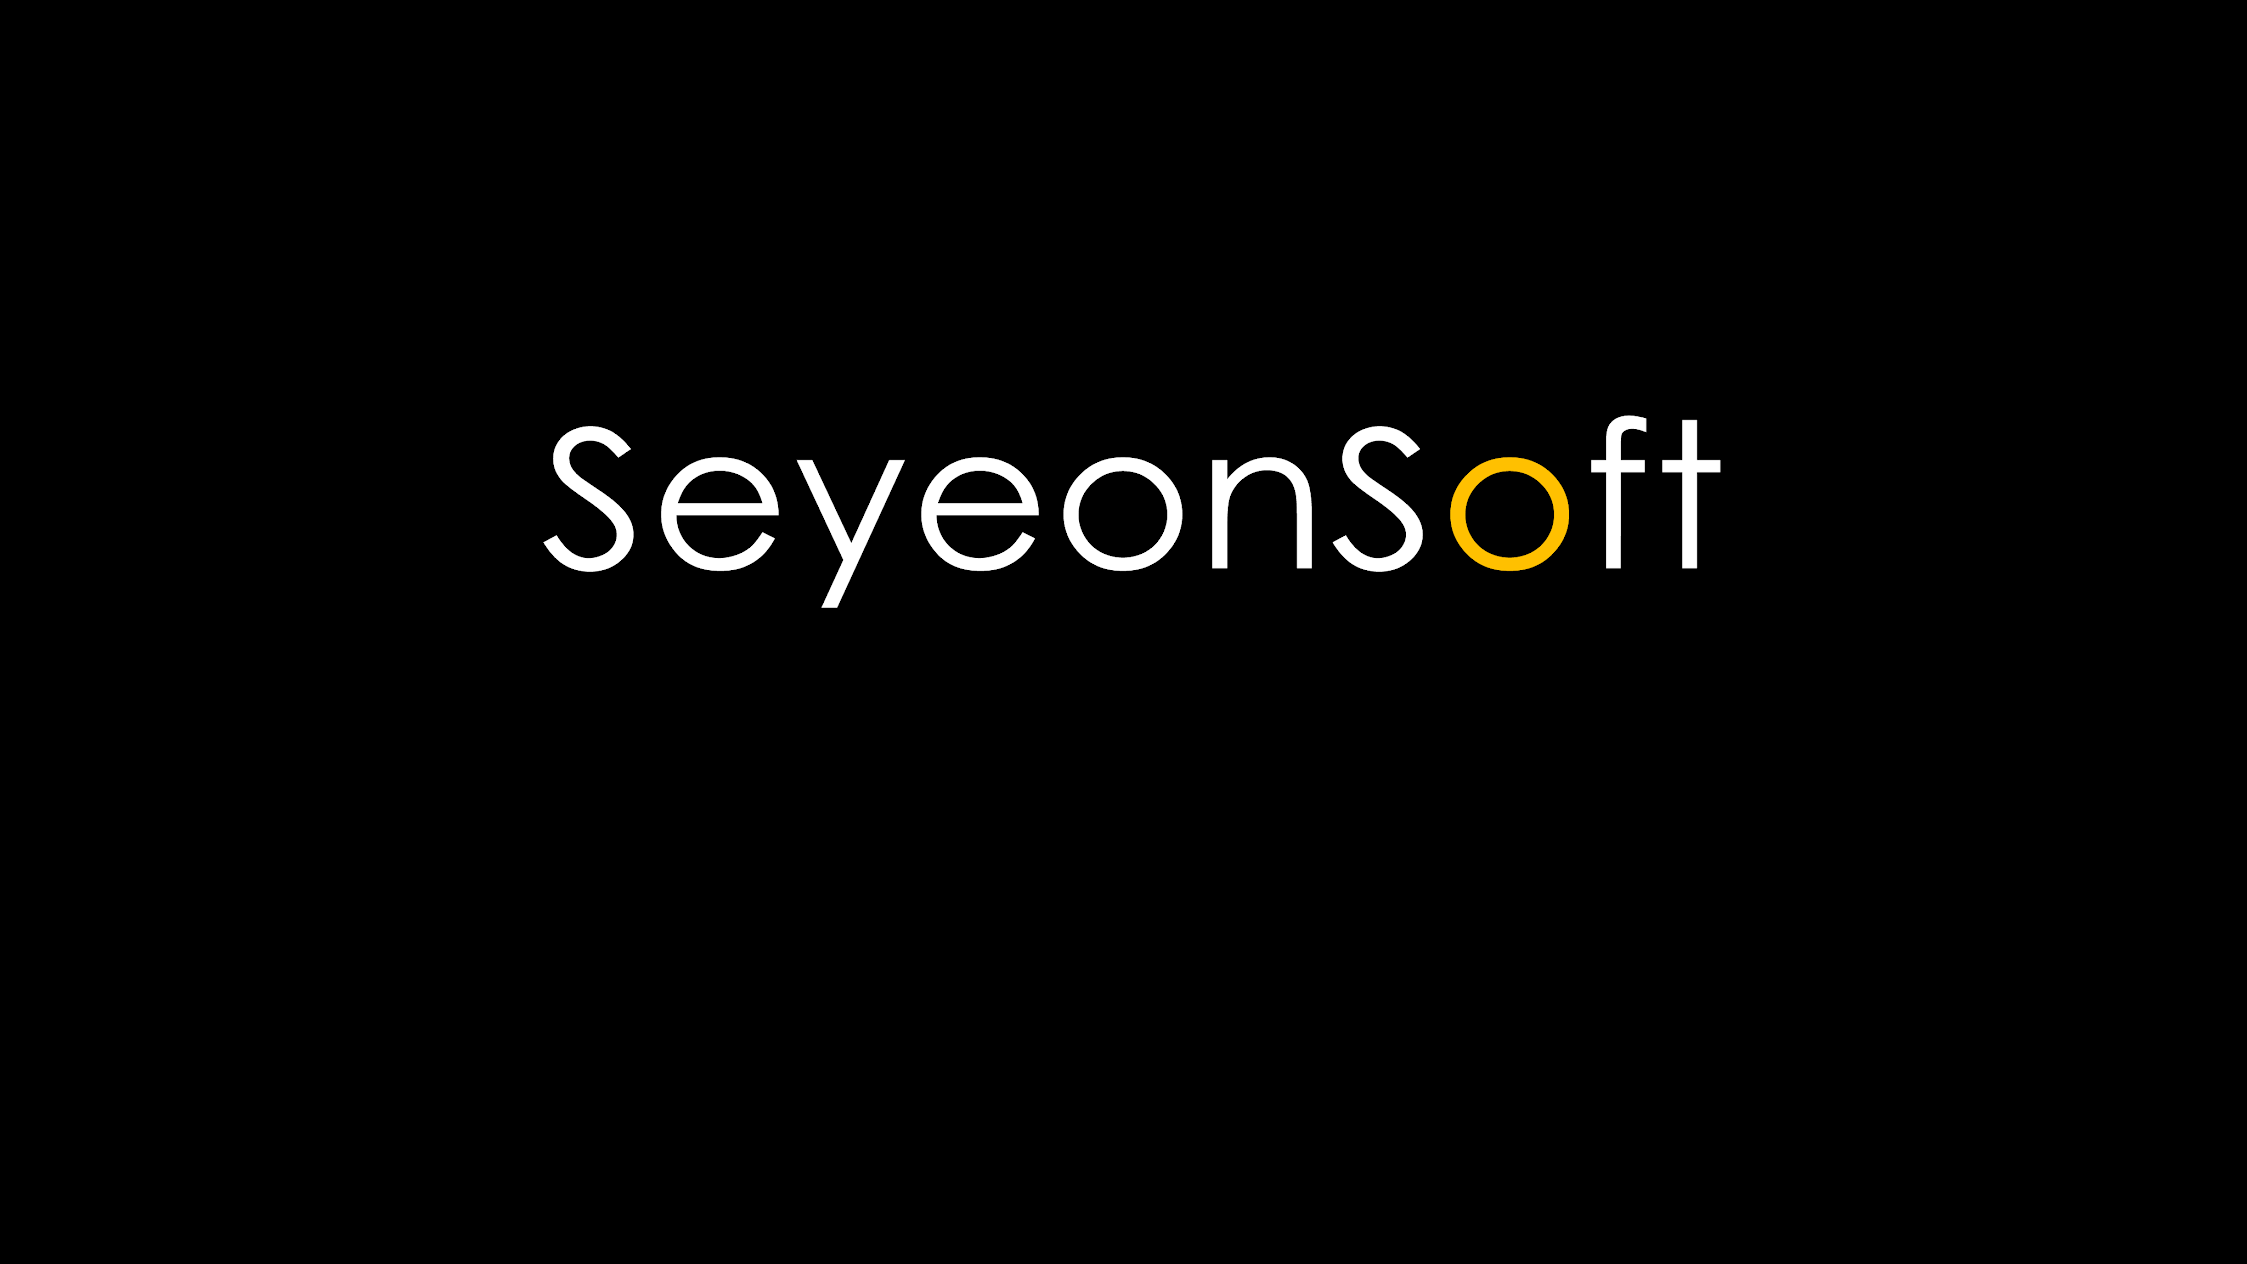 SeyeonSoft